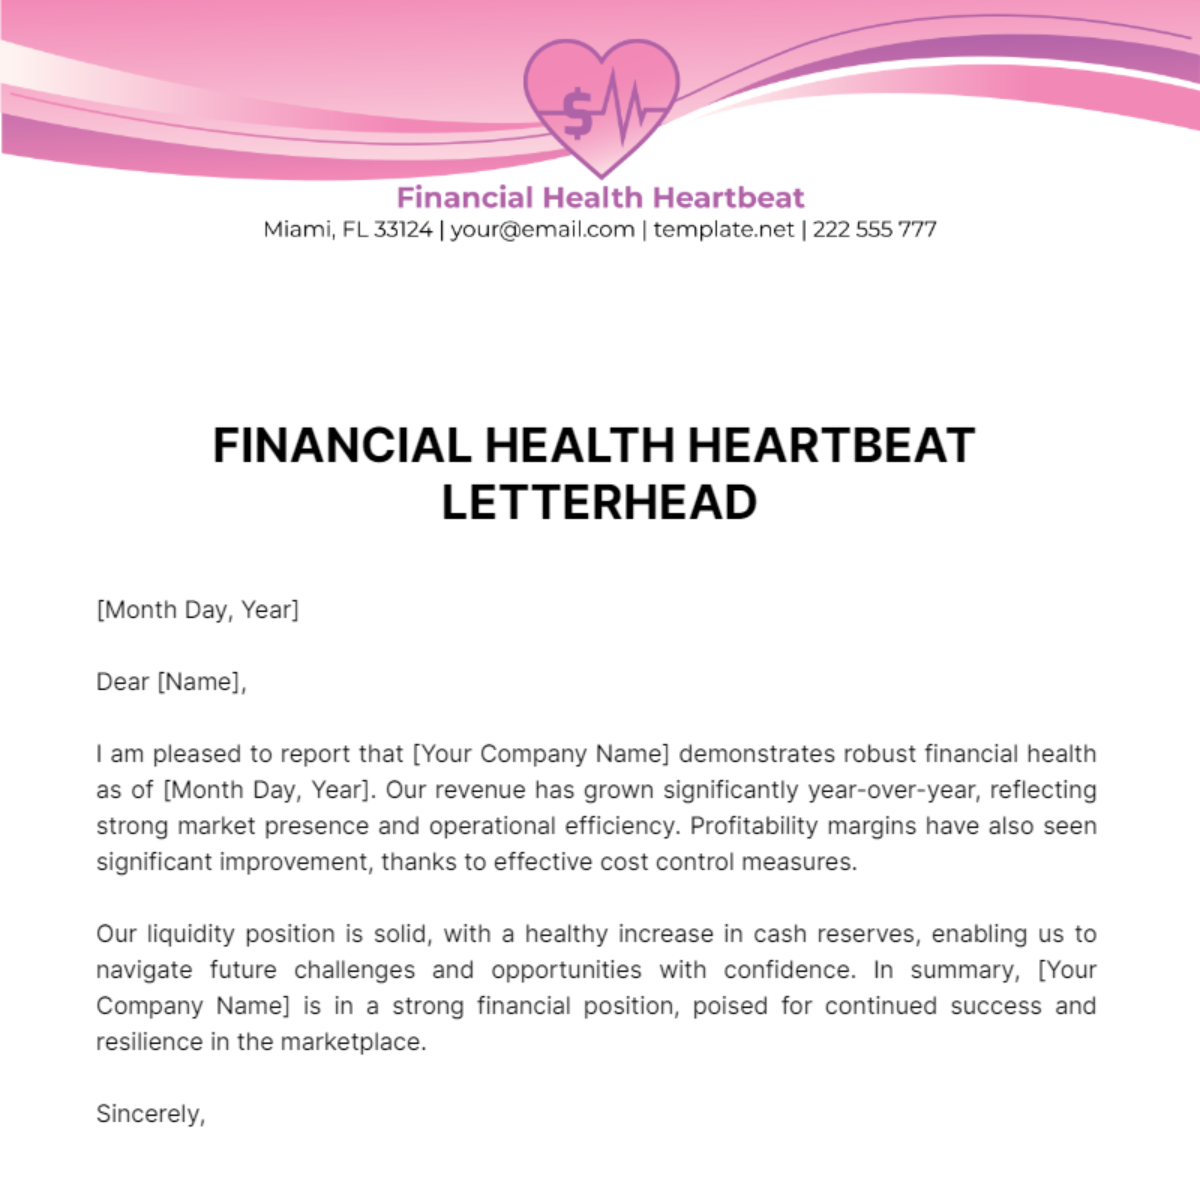 Financial Health Heartbeat Letterhead Template